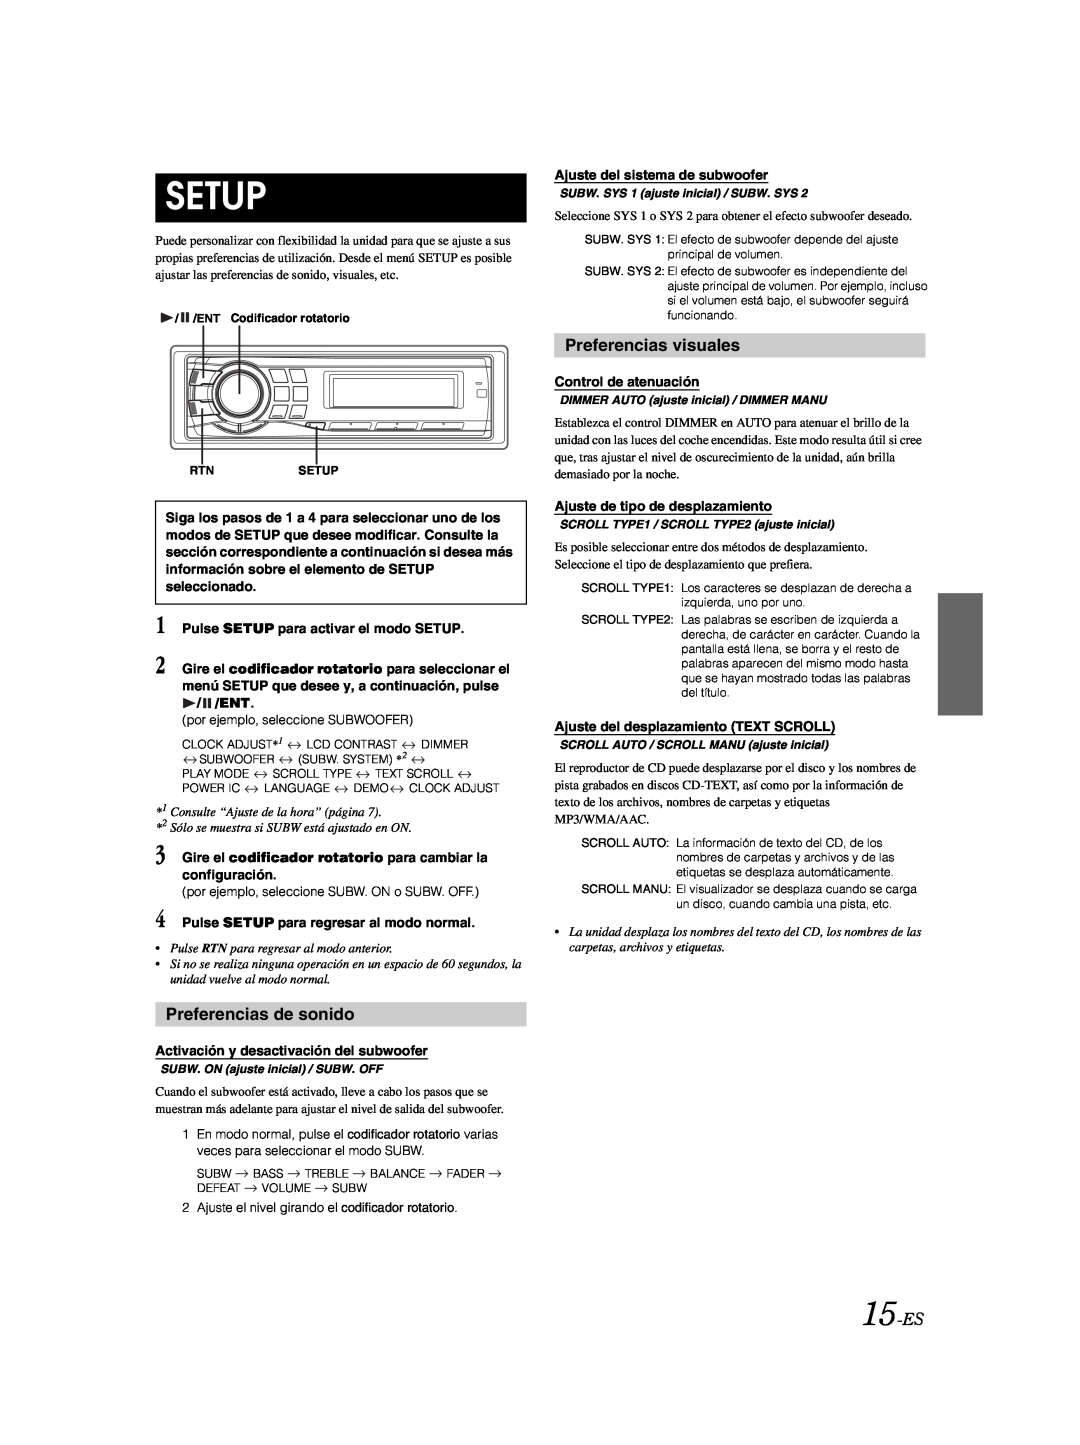 Alpine CDE-9881 owner manual Preferencias de sonido, Preferencias visuales, 15-ES, Setup 